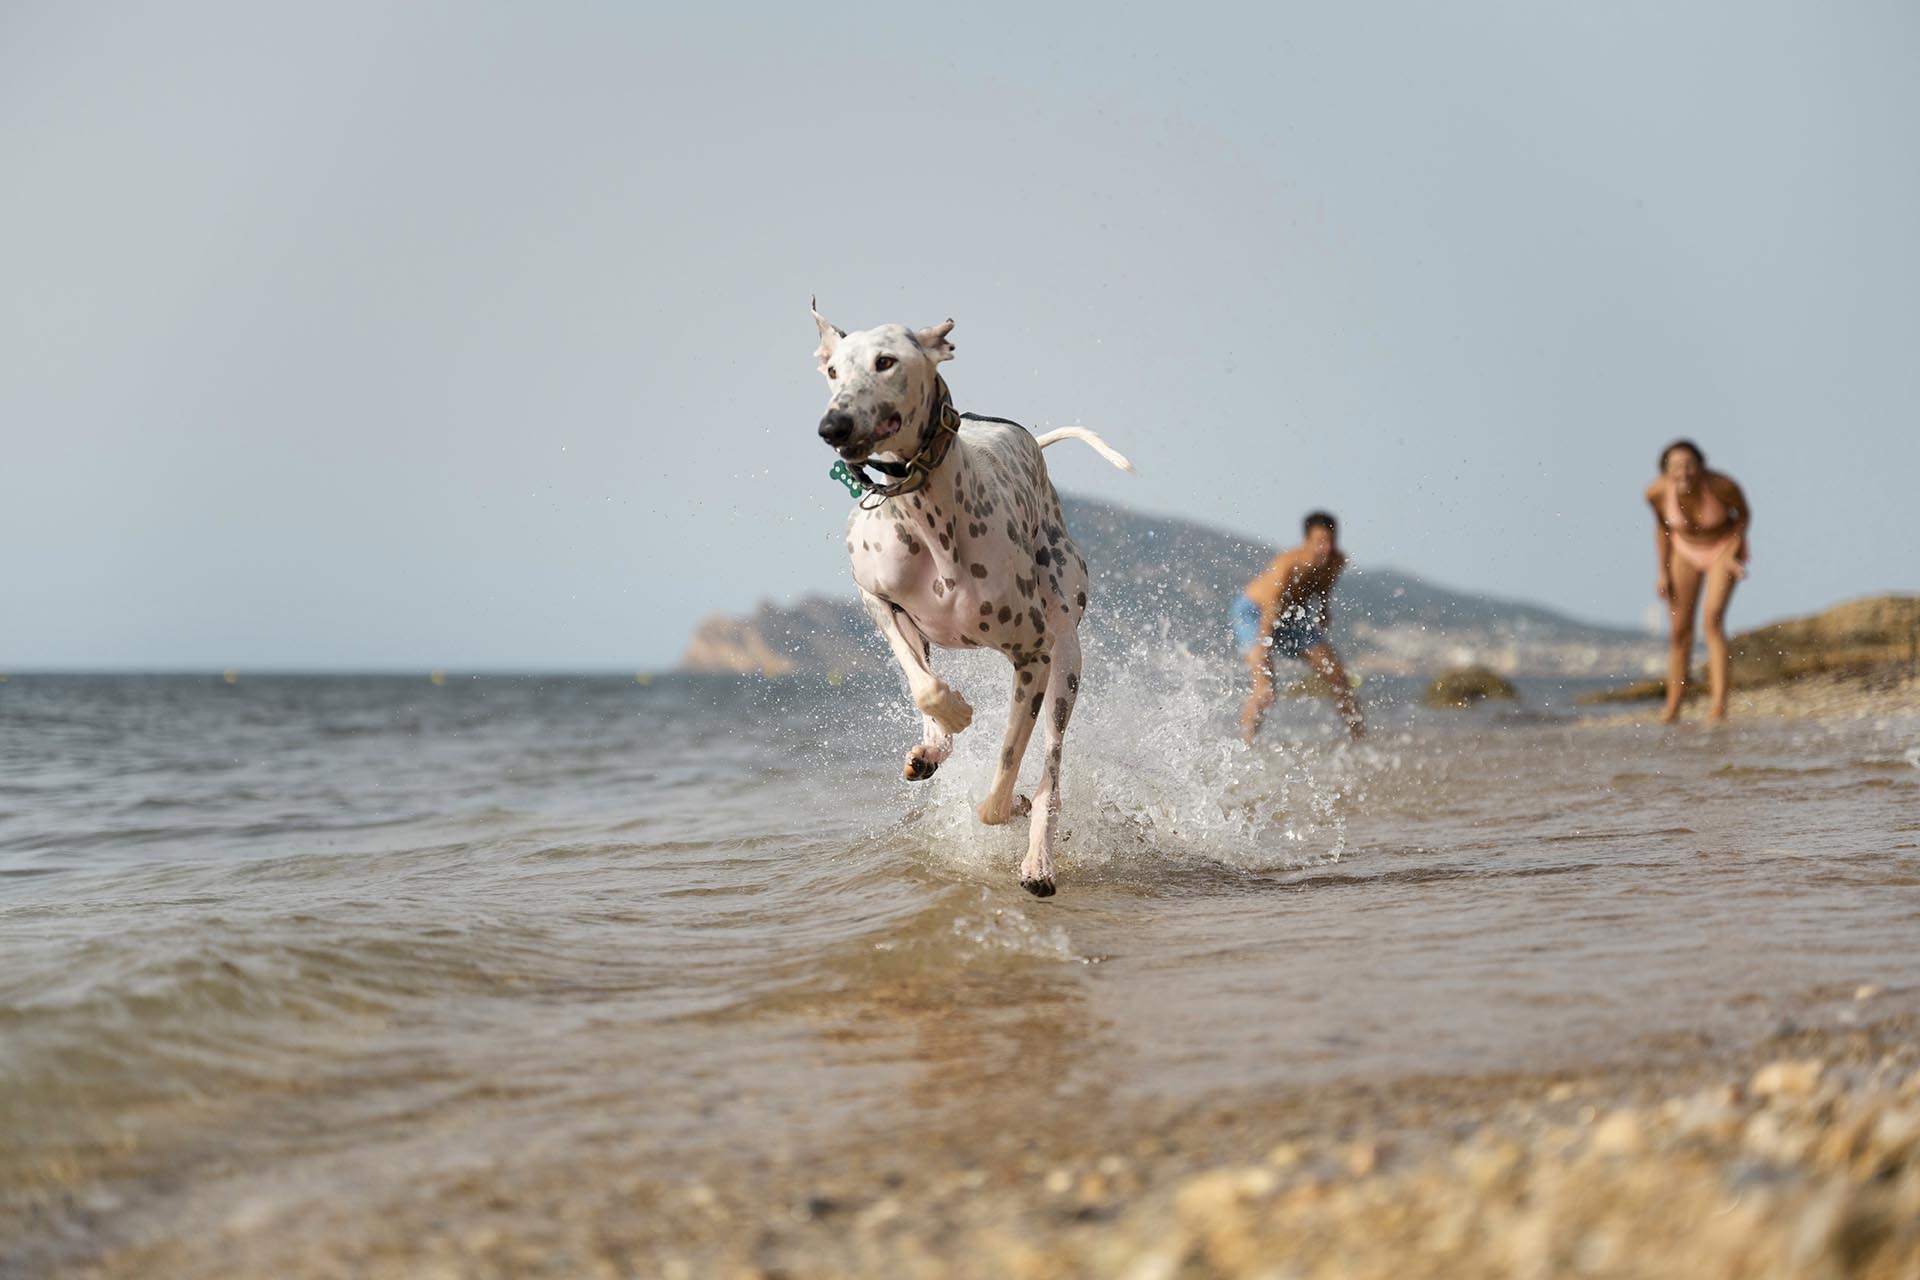 Alcuni suggerimenti utili per garantire al tuo migliore amico un divertimento sicuro e spensierato in spiaggia e in acqua.